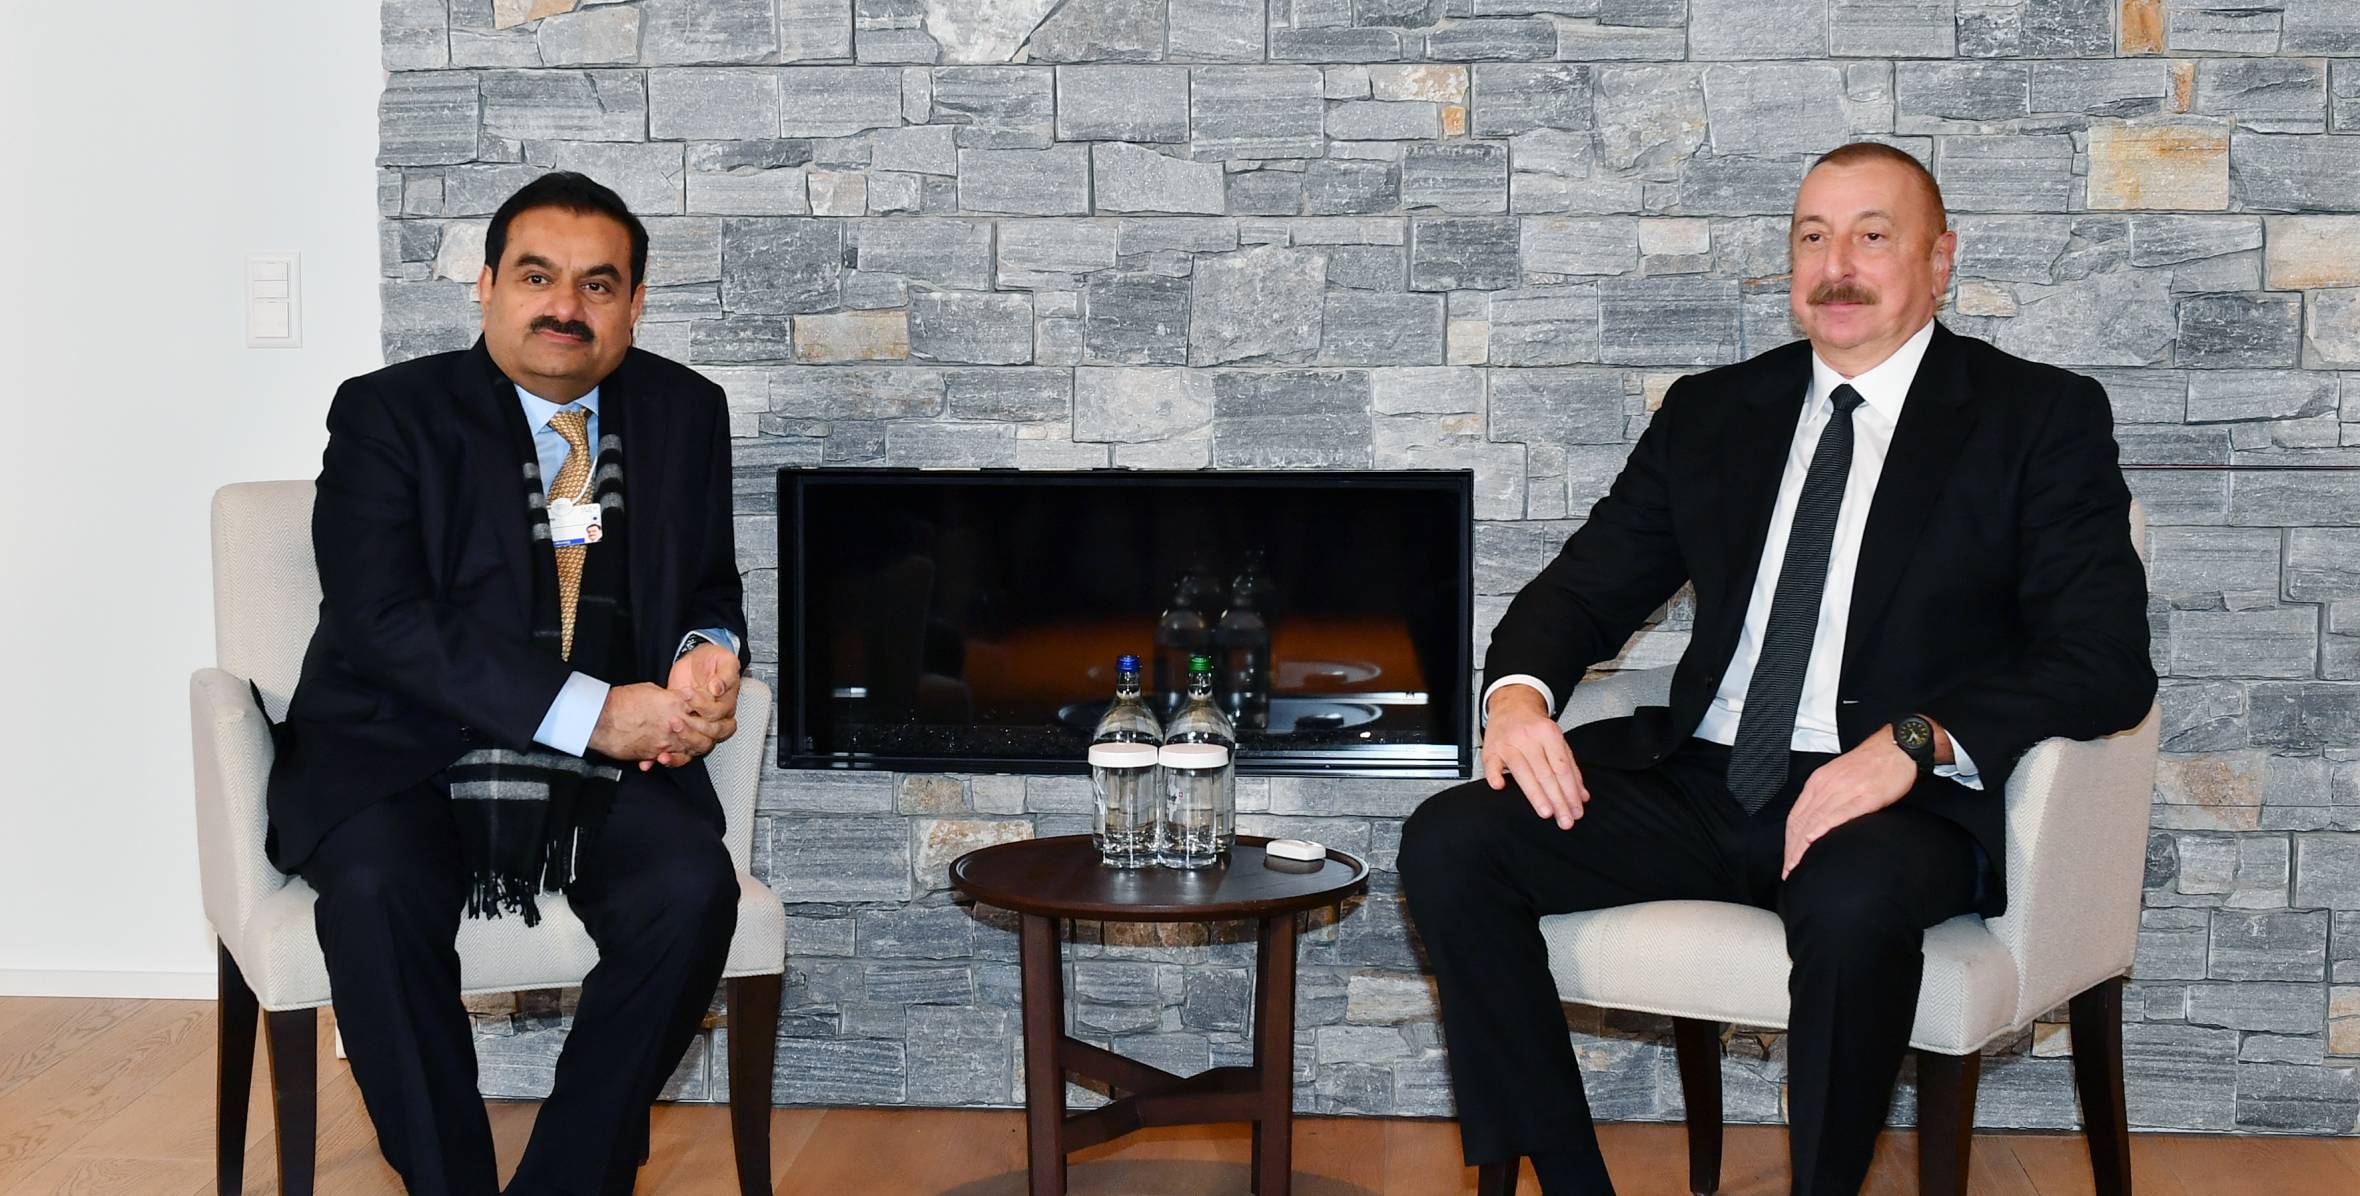 İlham Əliyev Davosda "Adani Group" şirkətinin təsisçisi və sədri ilə görüşüb